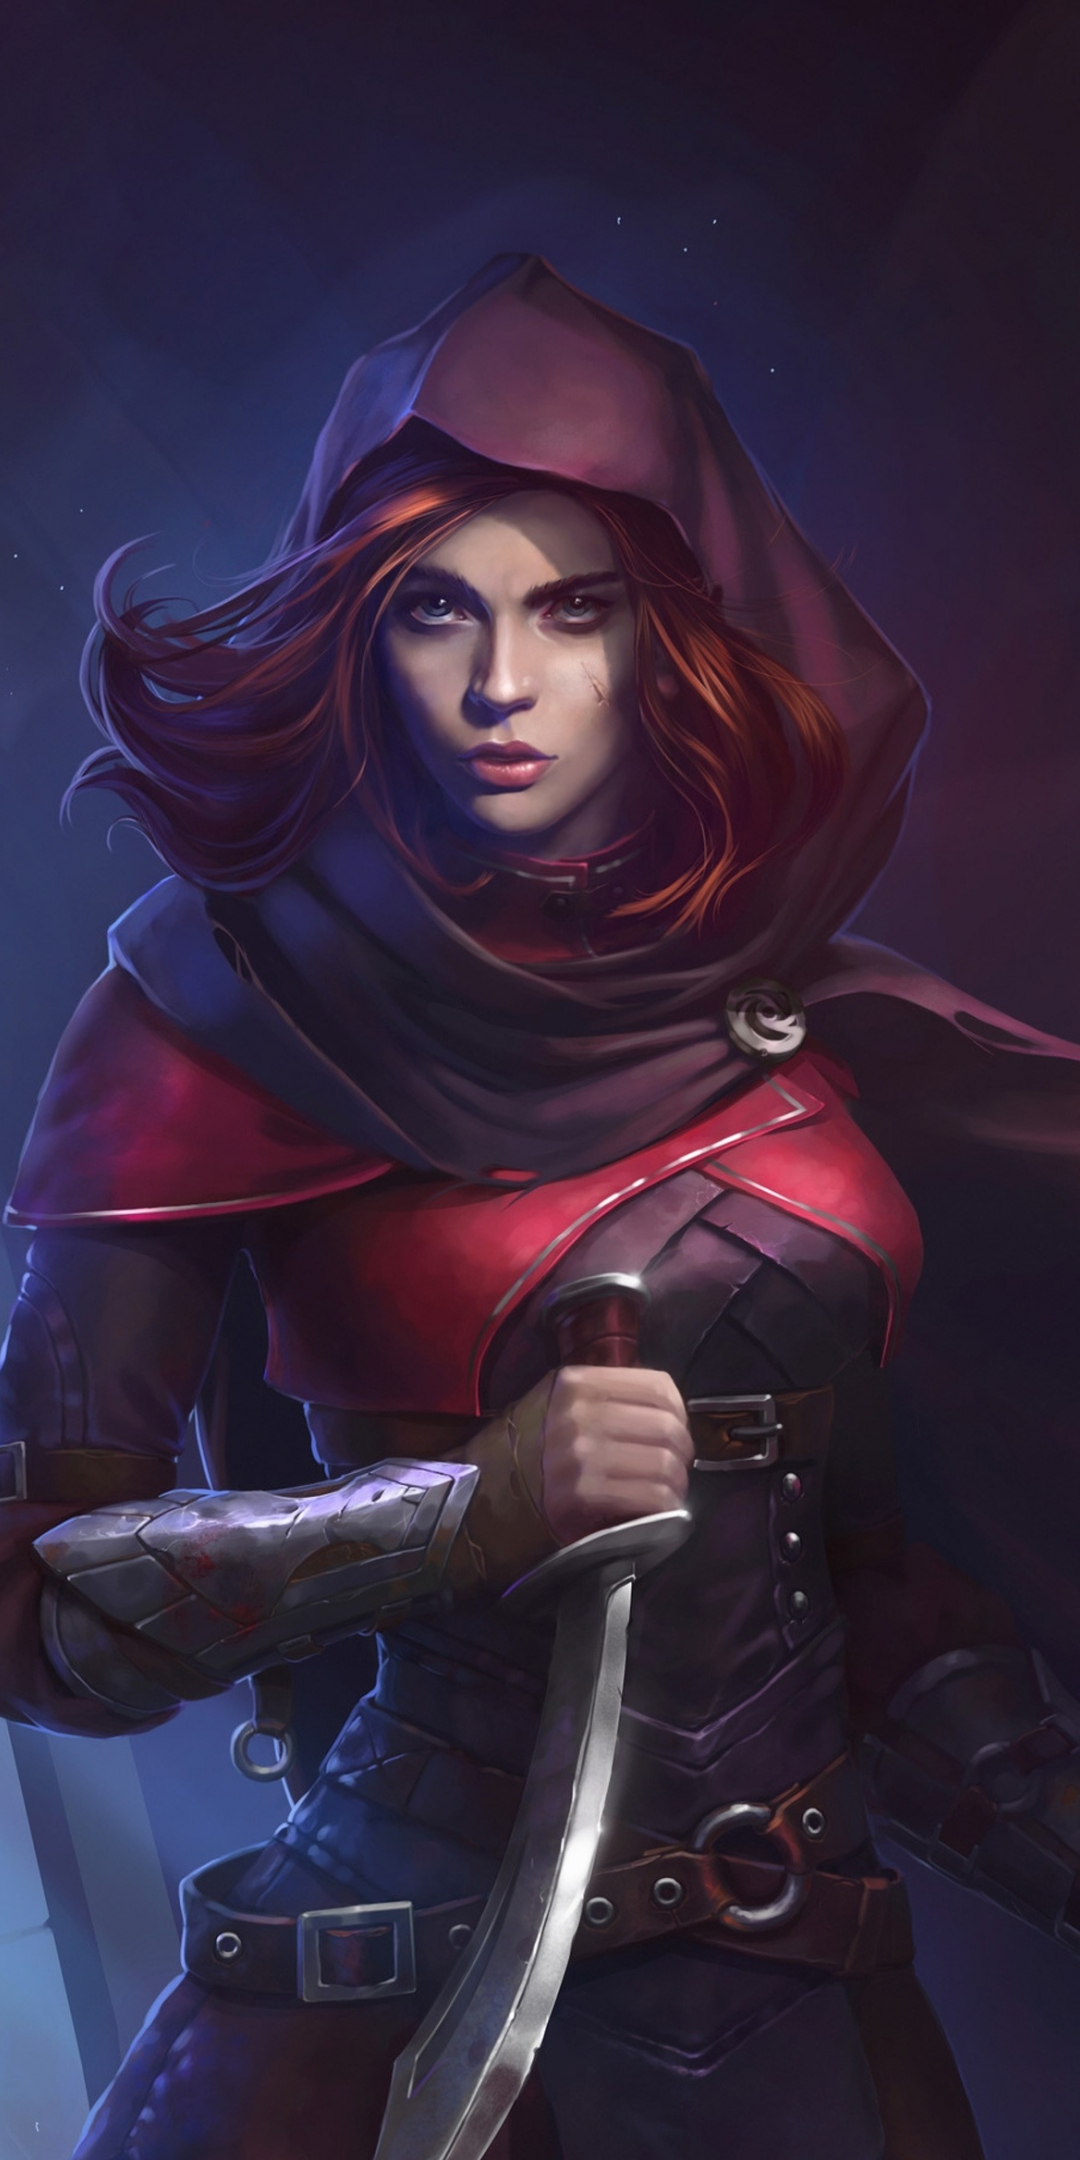 Woman assassin, beautiful, red head, illustration, 1080x2160 wallpaper